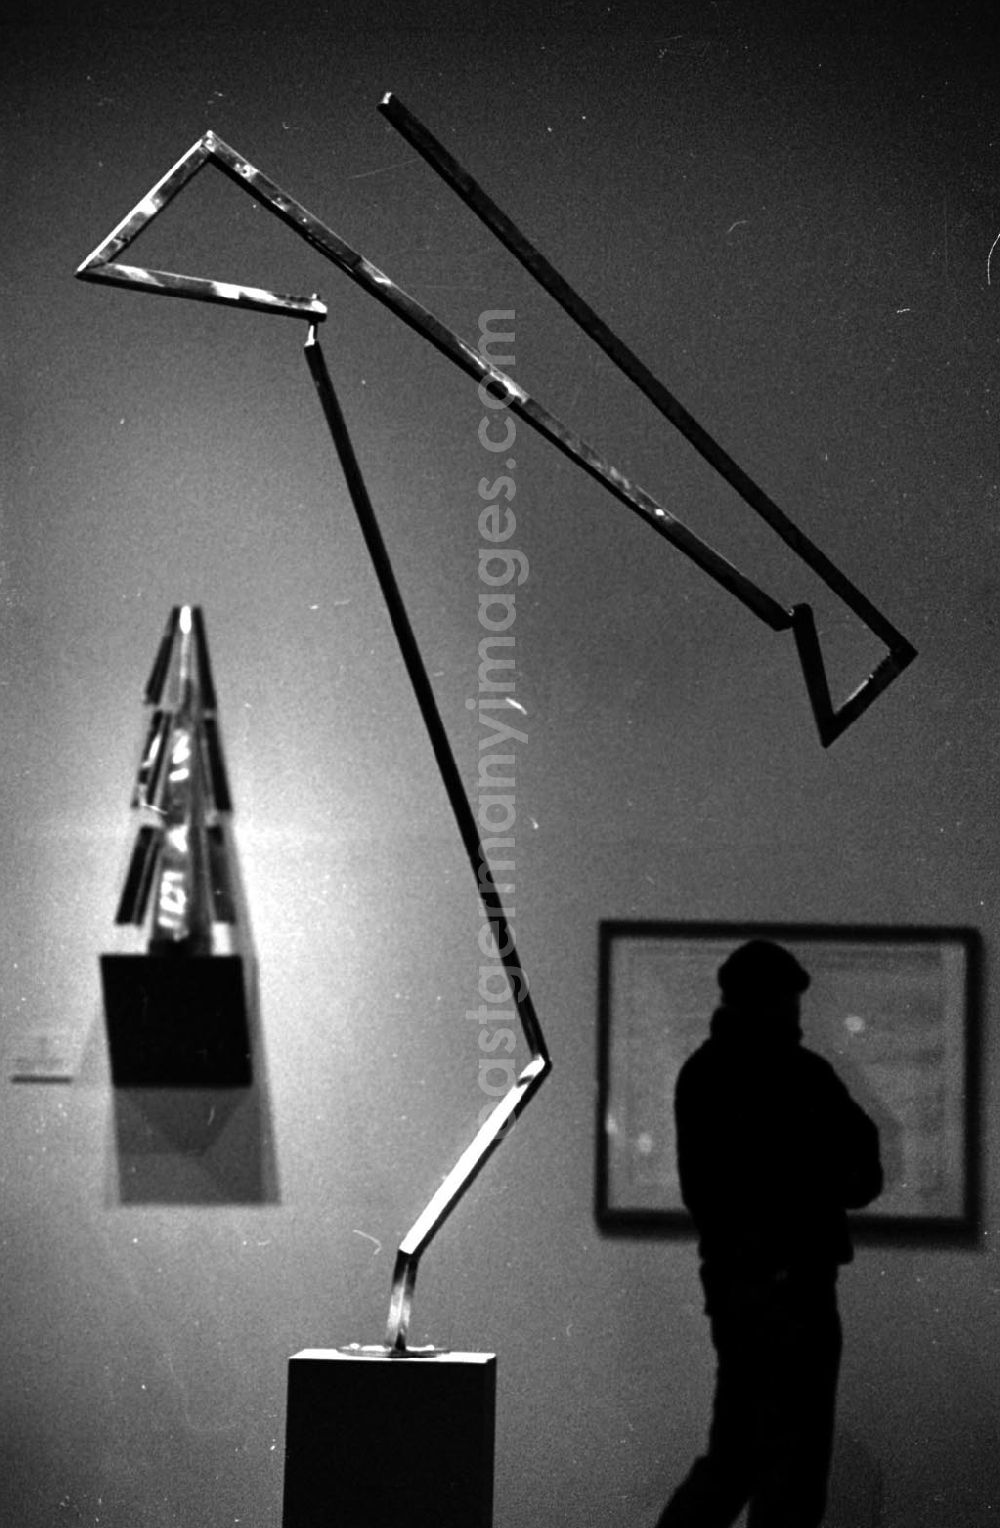 GDR picture archive: Berlin - Plastik Rickeys-Ausstellung Bizarres und Bewegung 29.12.92